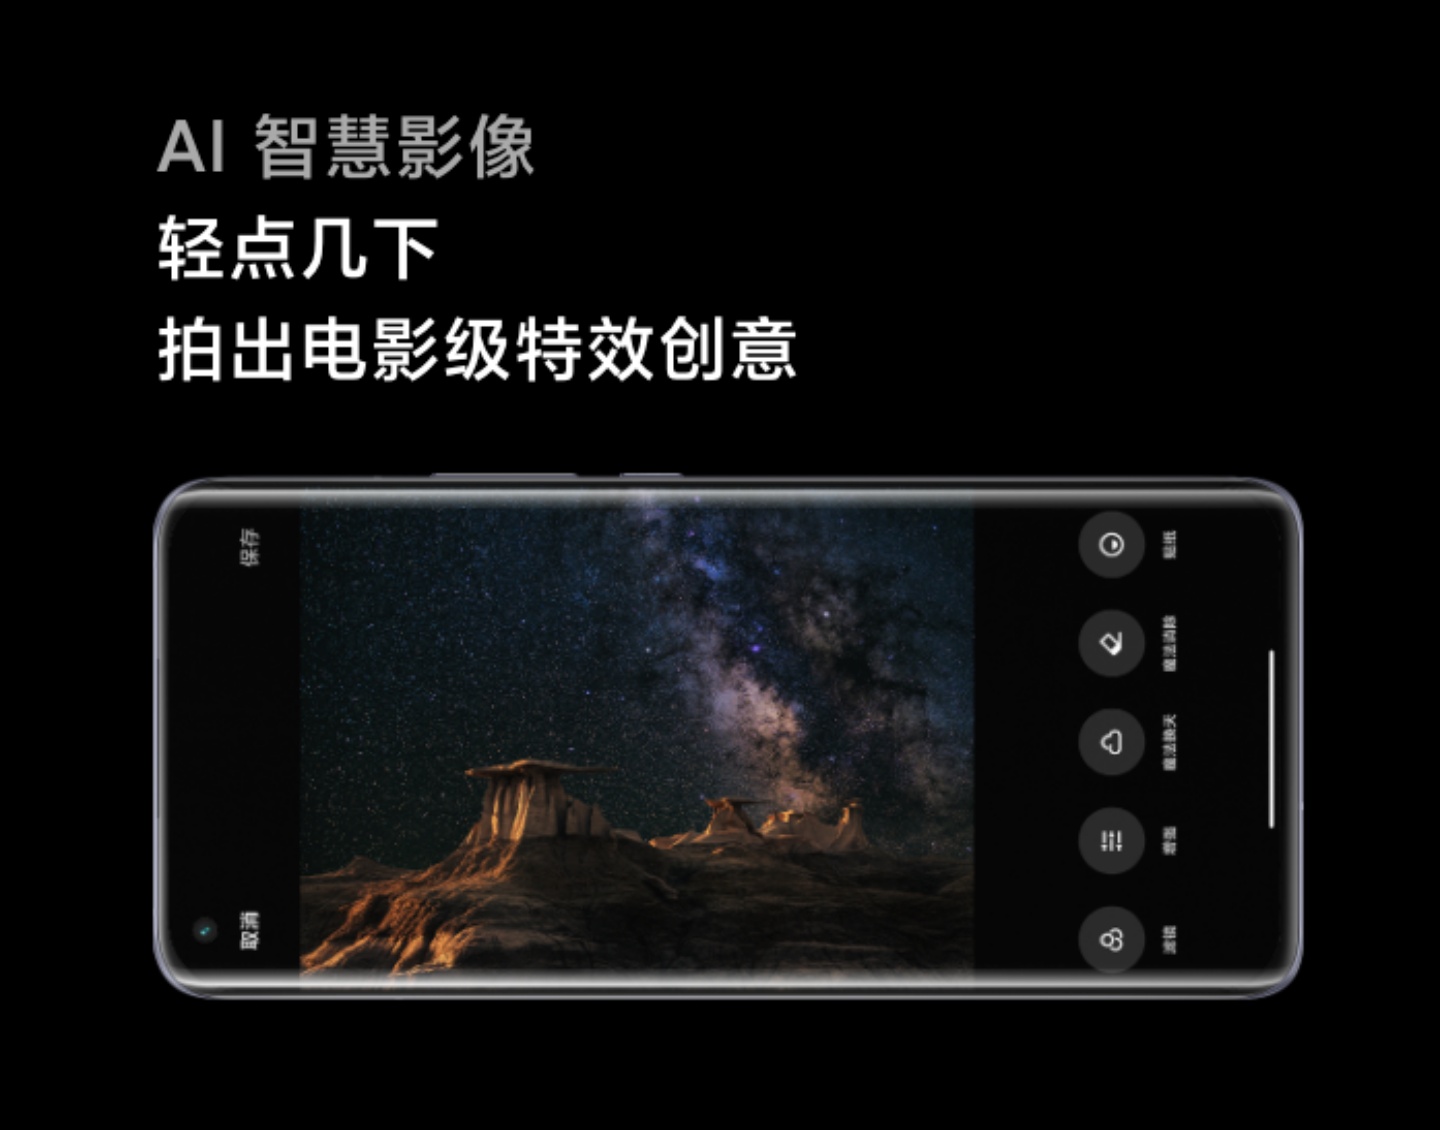 首款 S888 手機『 小米 11 』正式亮相！1 億 800 萬畫素主鏡頭，售價約新台幣 17,170 元起